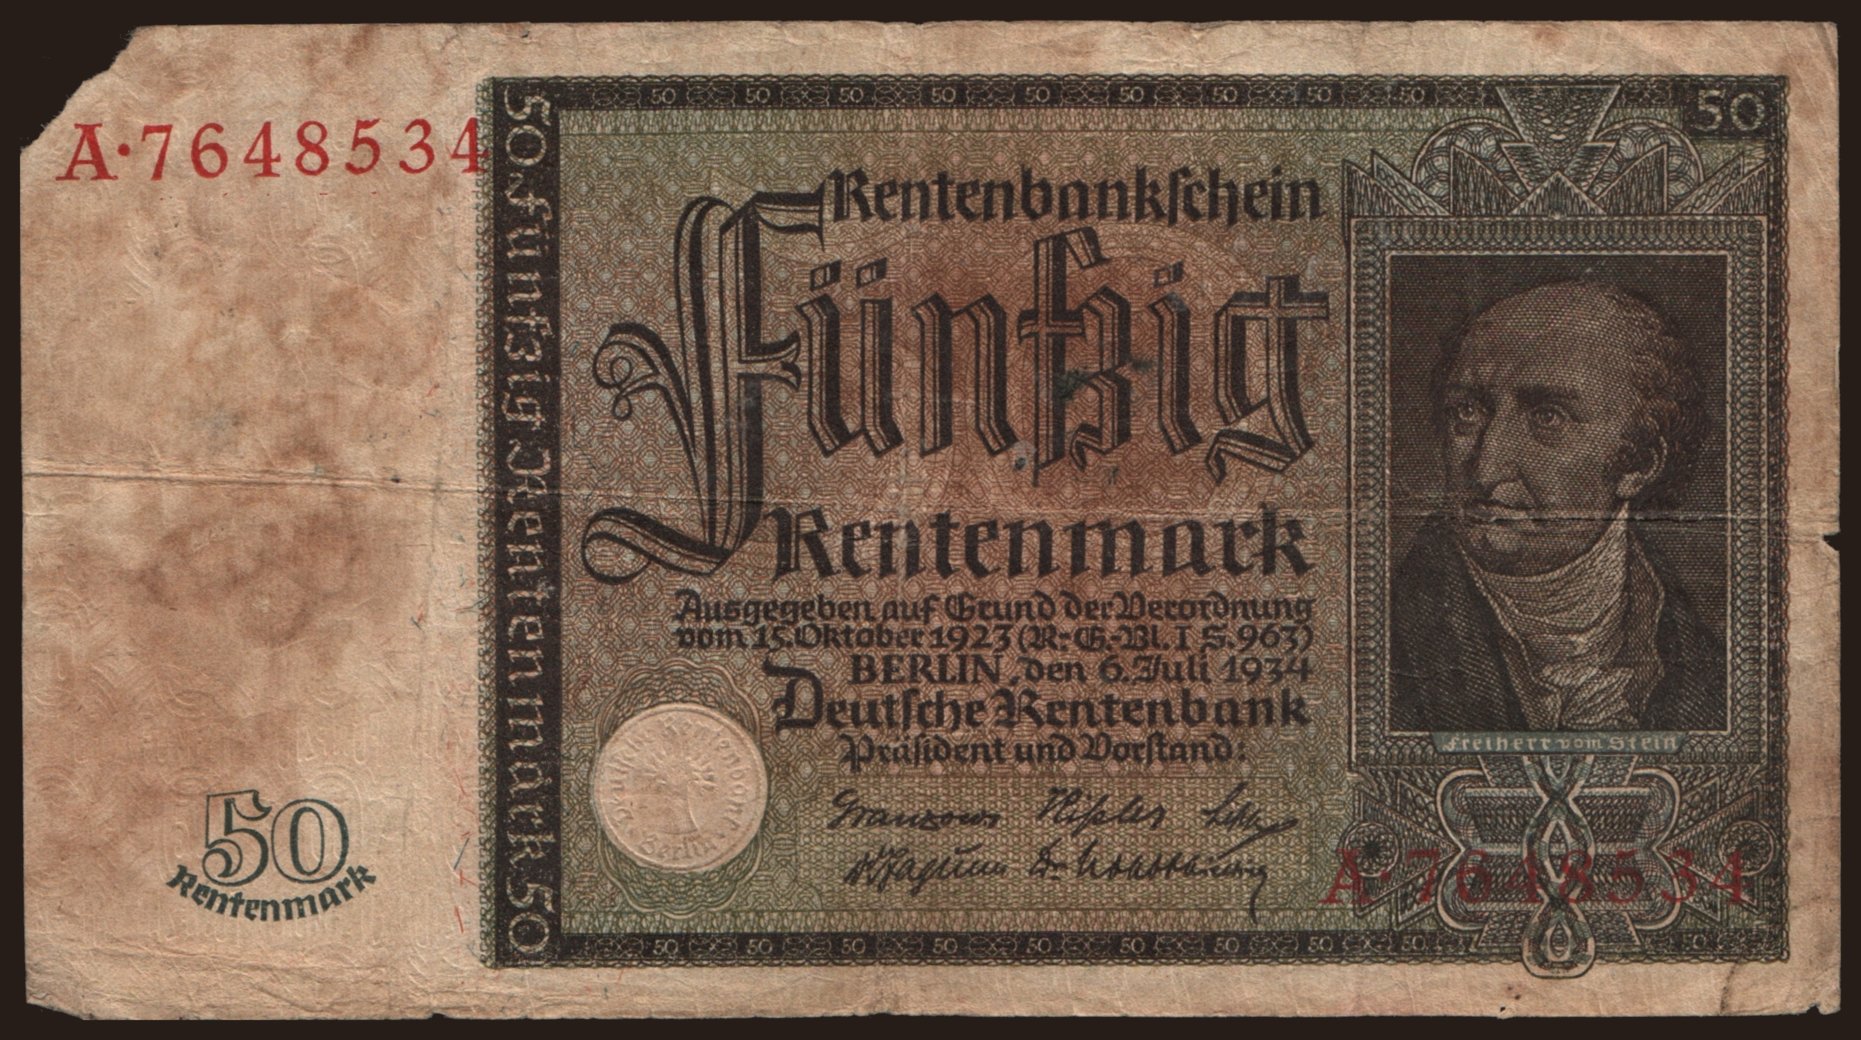 50 Rentenmark, 1934